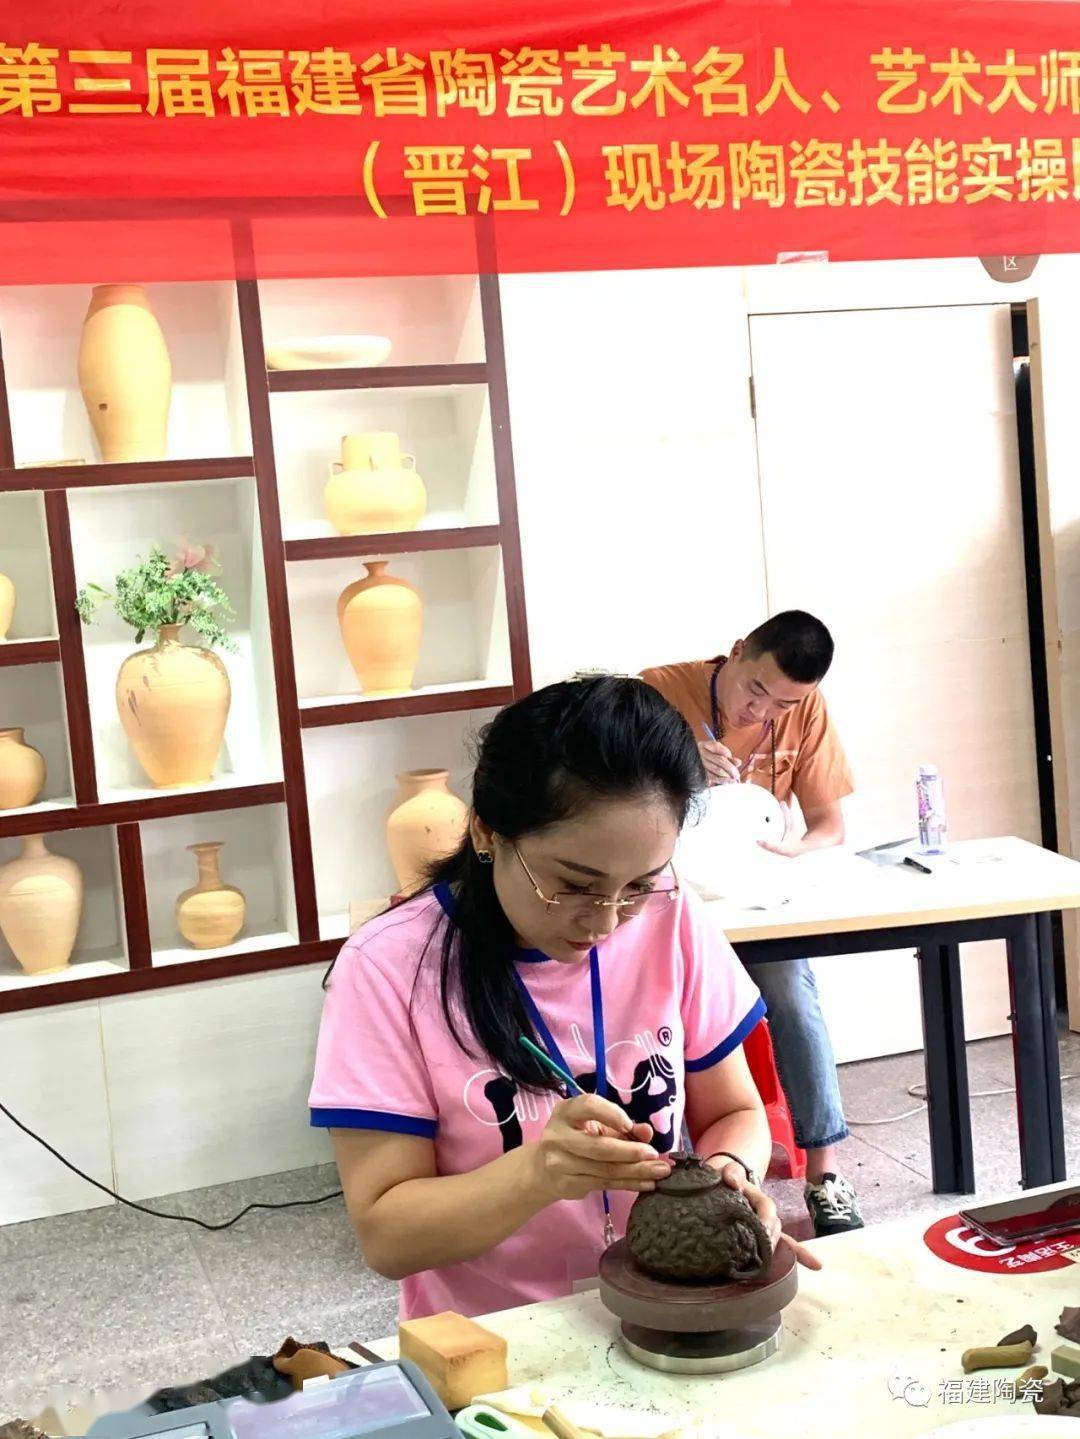 第三届福建省陶瓷艺术名人、艺术大师推荐学习活动（晋江）现场陶瓷技能实操比赛在晋江磁灶举行